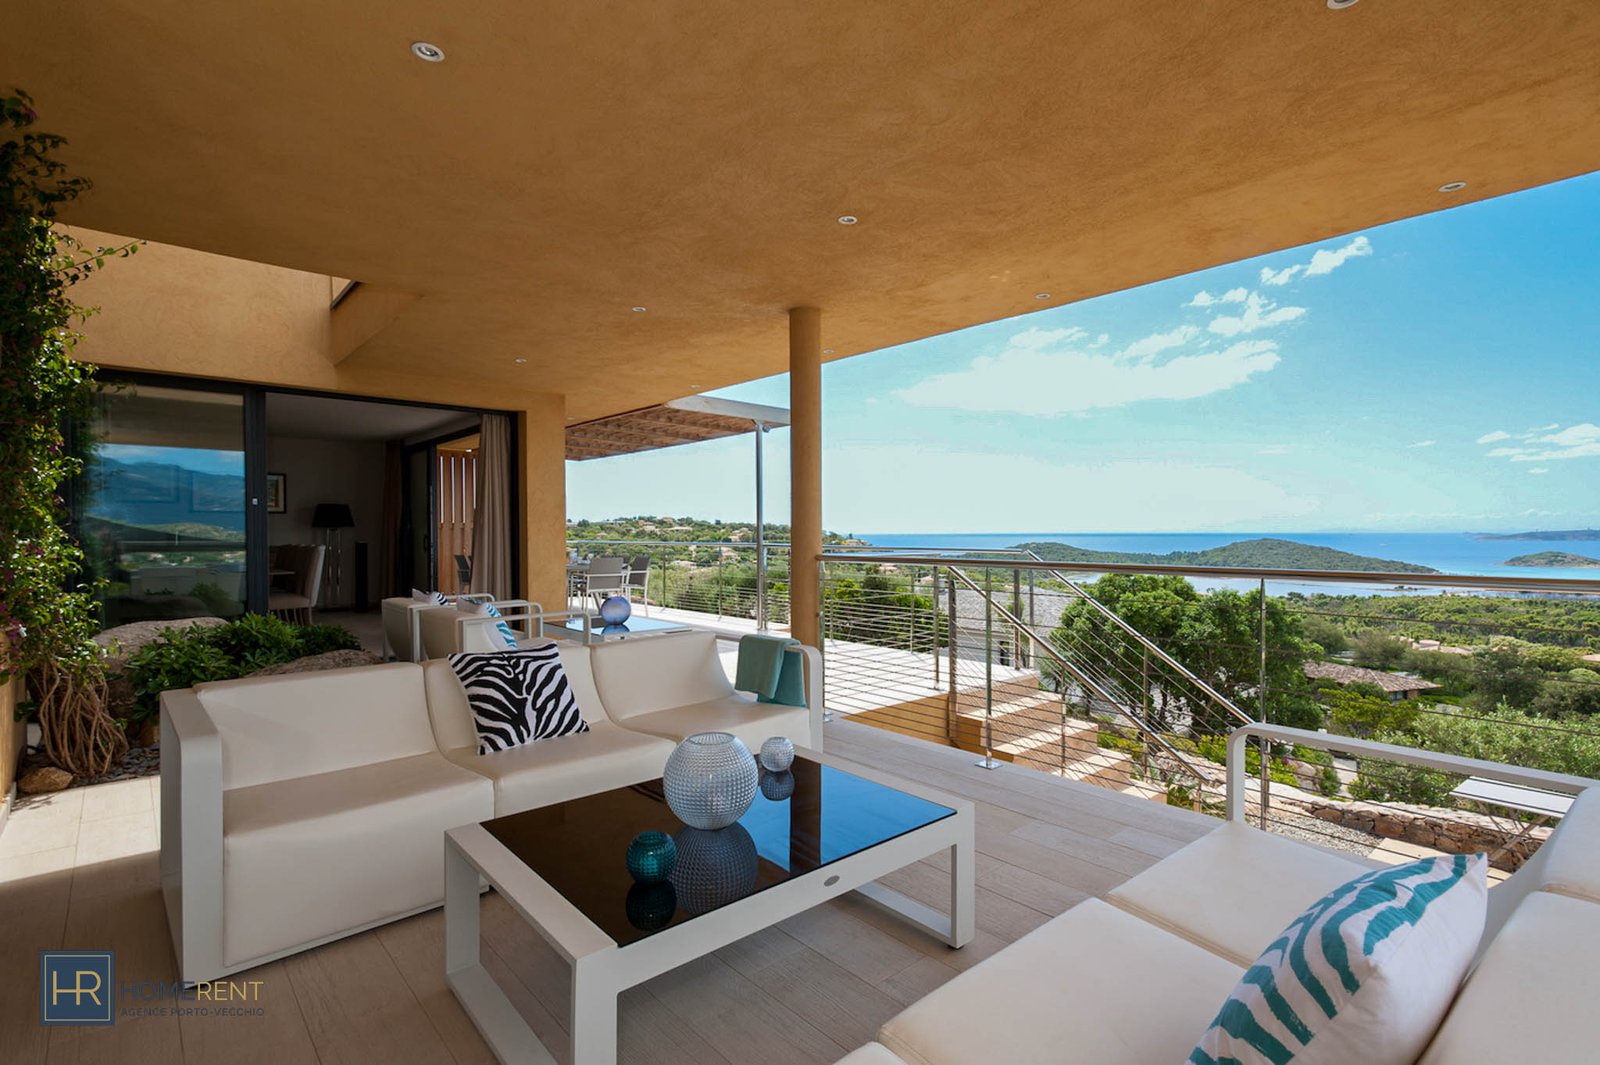 Location villa de luxe en Corse avec vue mer sur la baie de Saint Cyprien location villa plage de Palombaggia à Porto-Vecchio